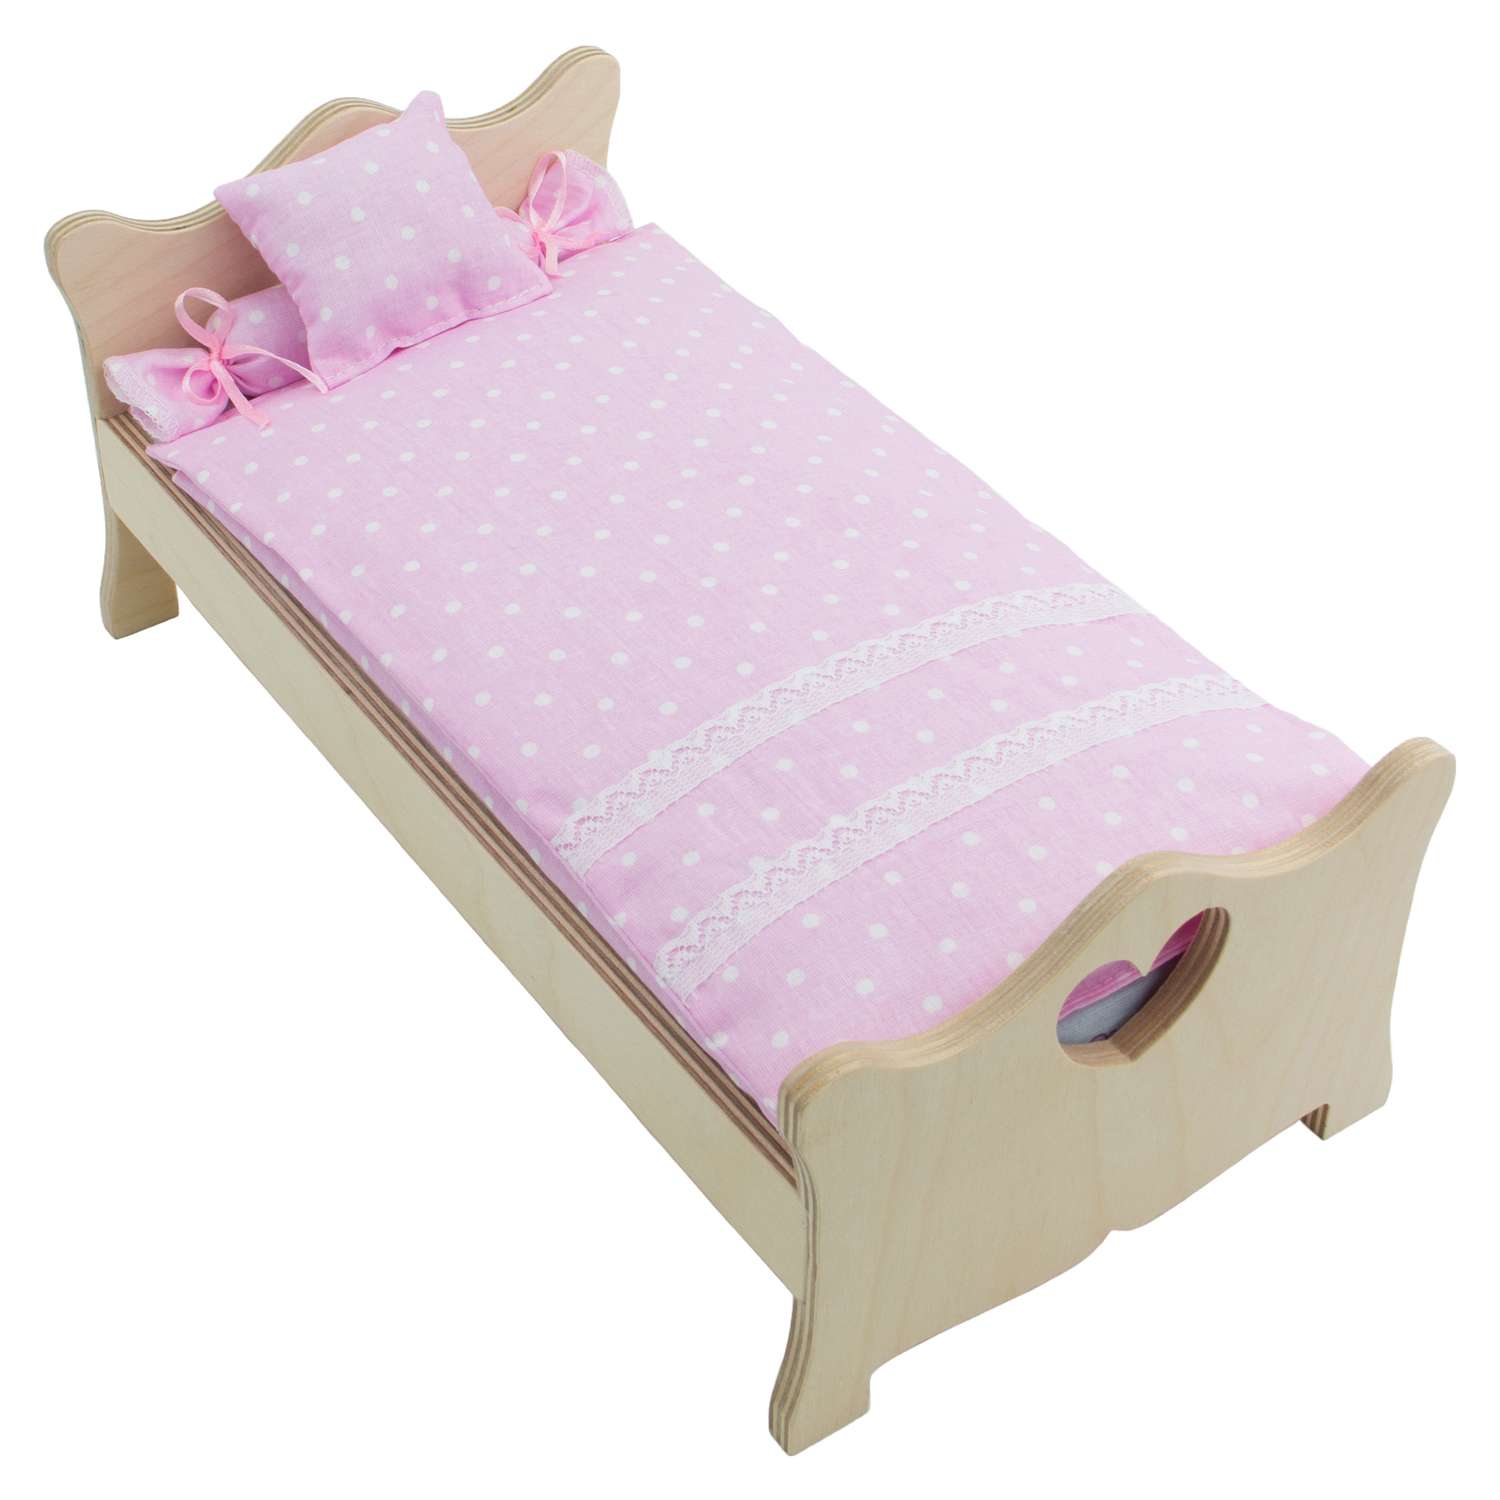 Комлпект постельного белья Модница для куклы 29 см пастельно-розовый 2002пастельно-розовый - фото 4